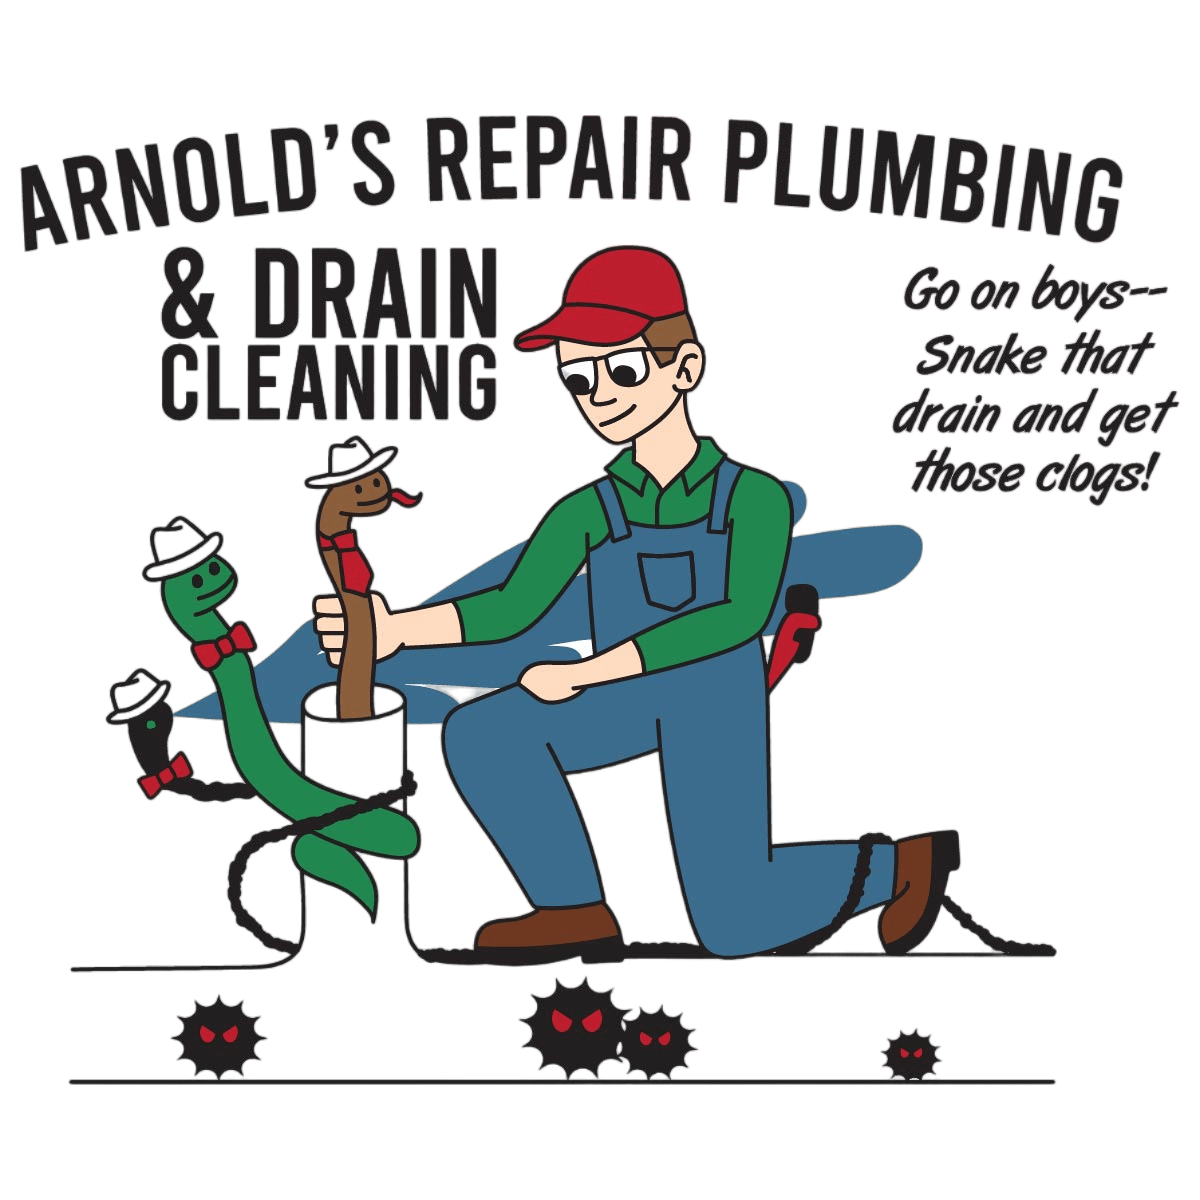 Arnold's Repair Plumbing